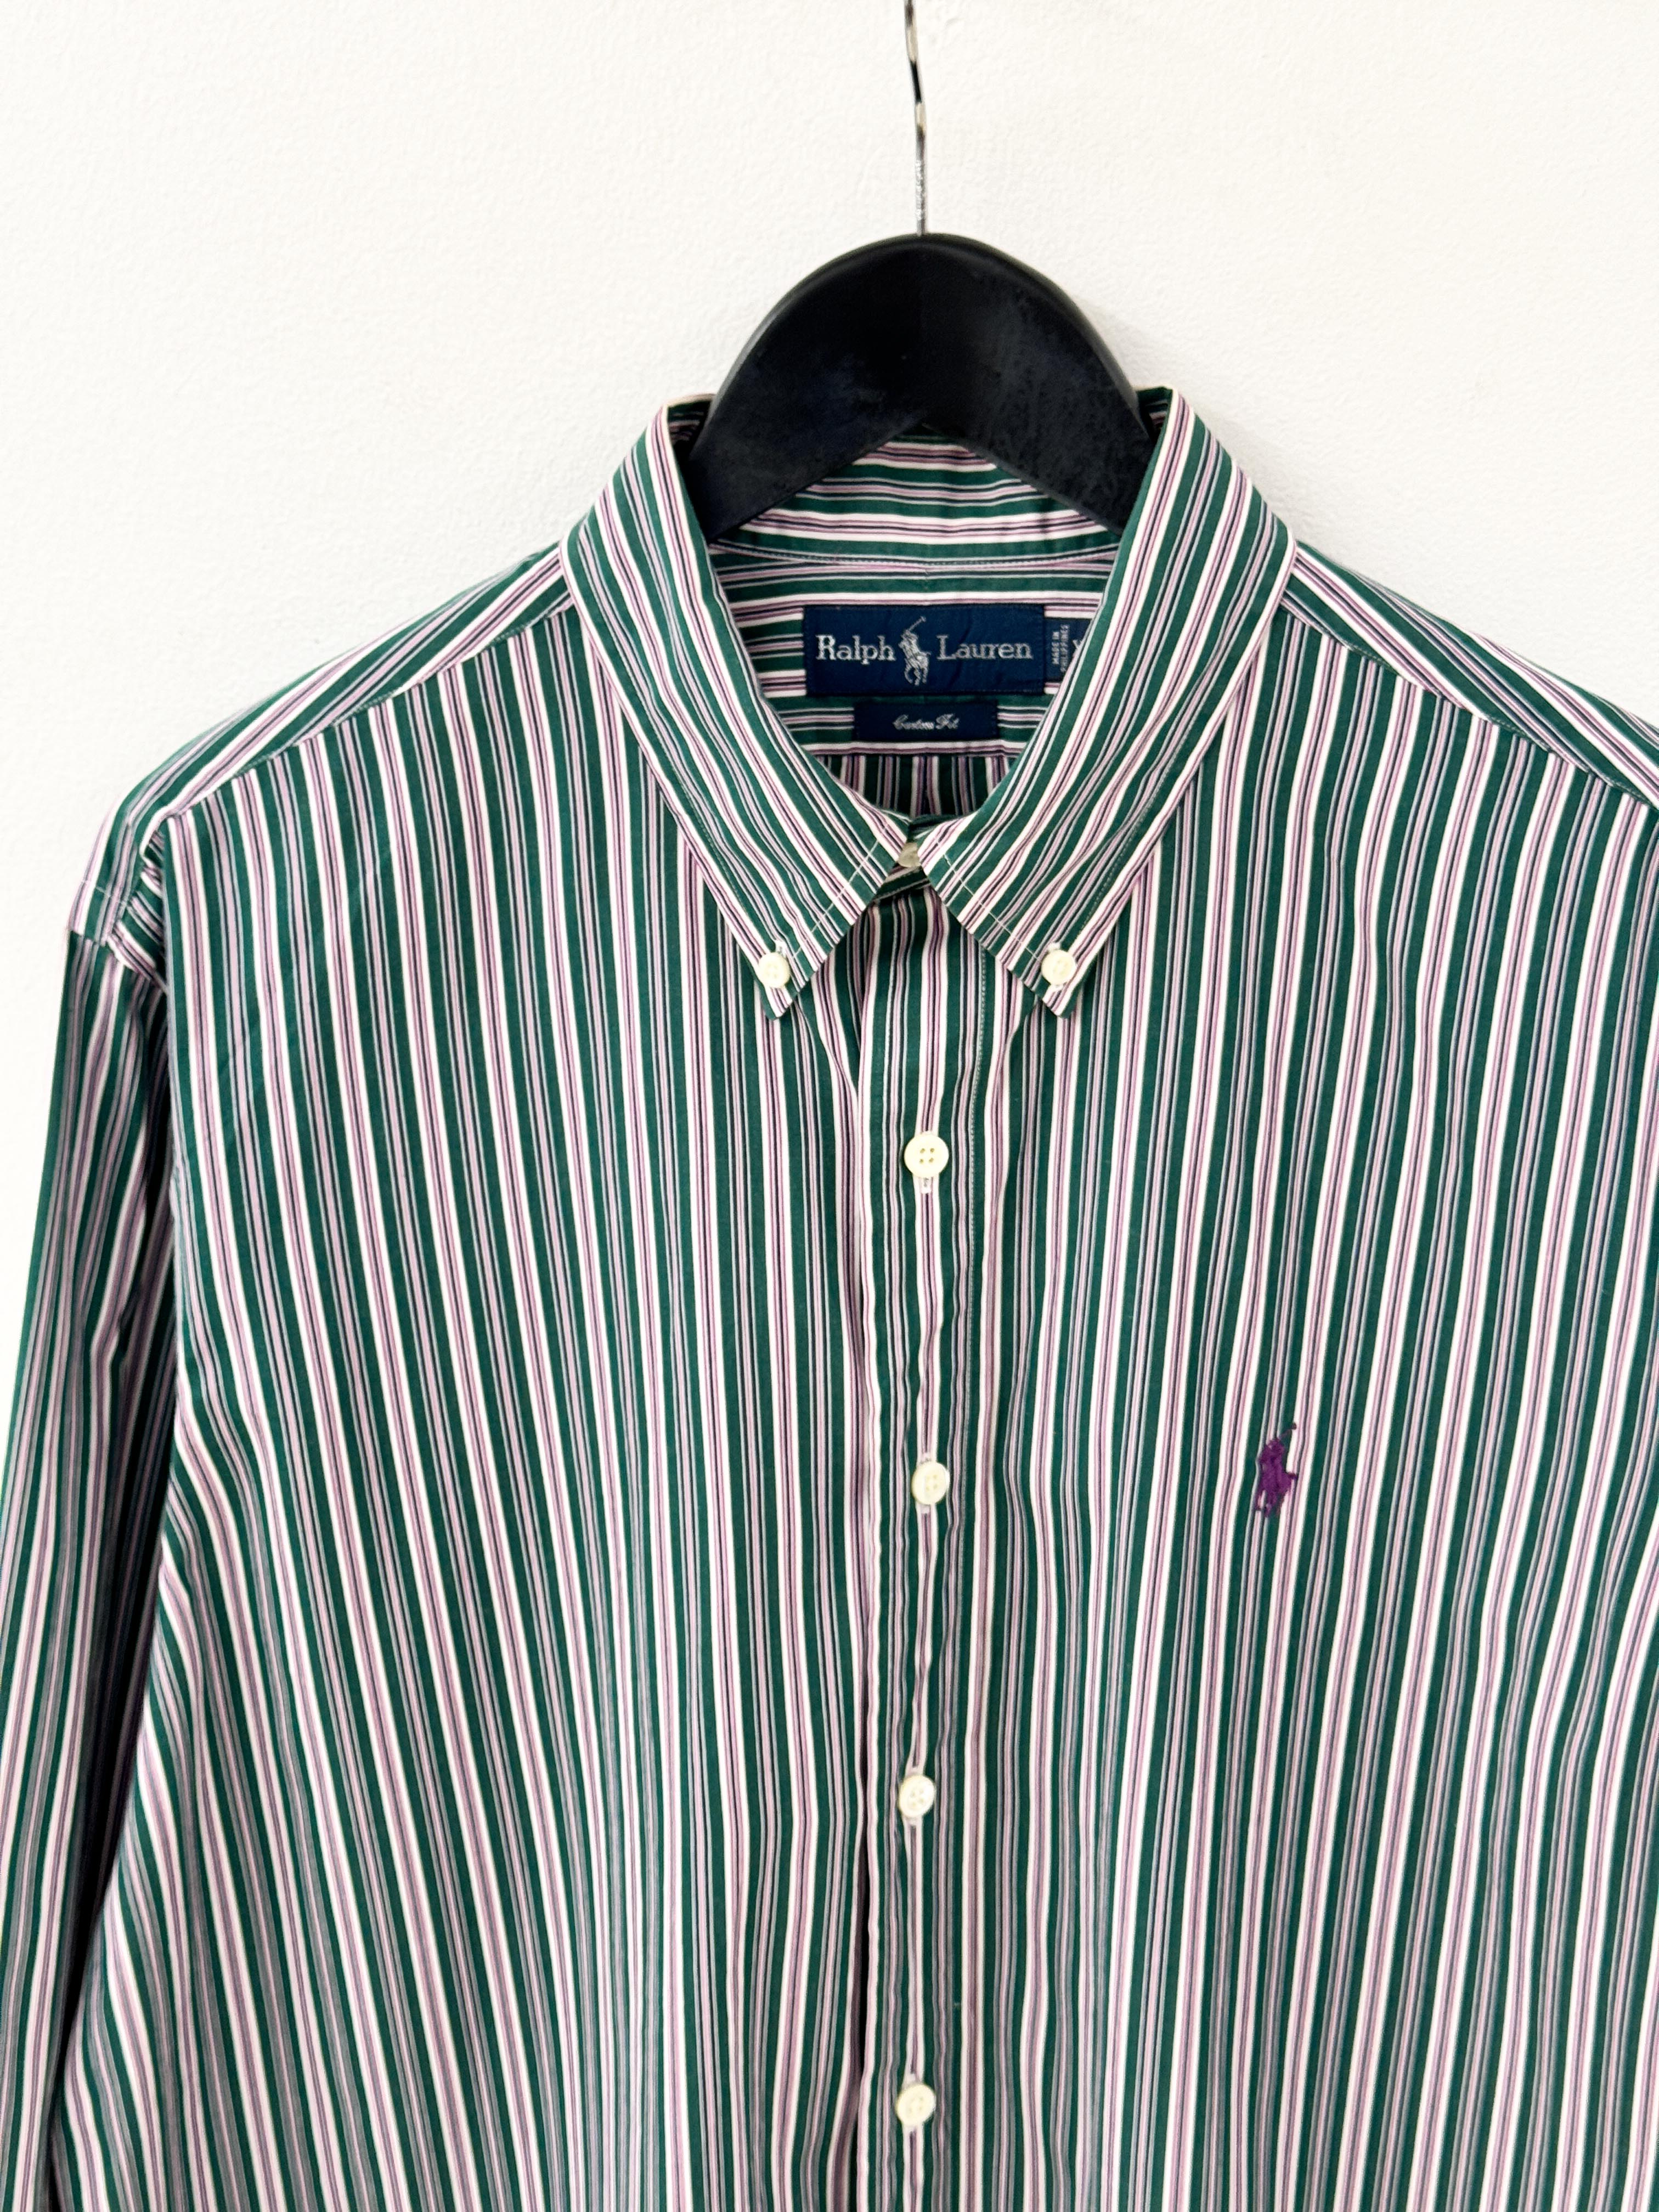 RalphLauren stripe shirt XL